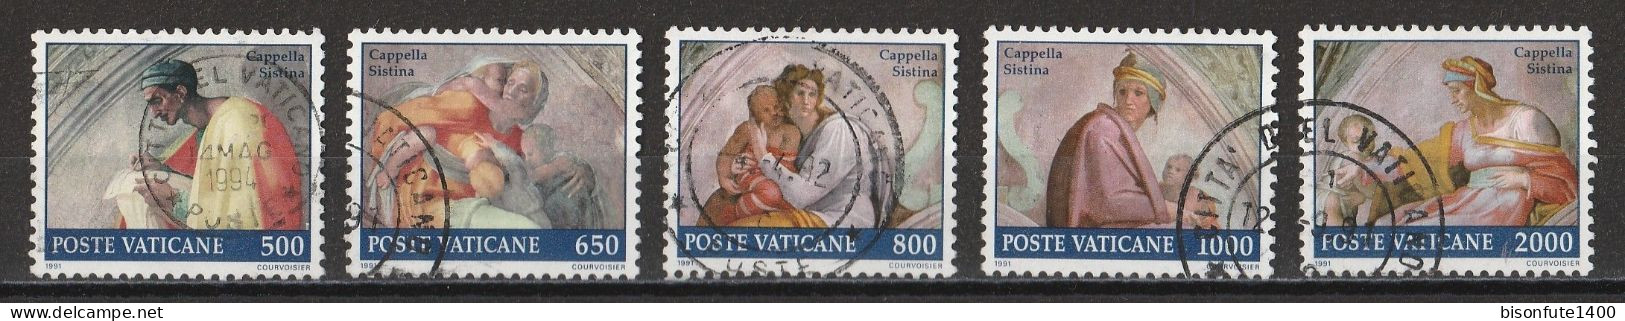 Vatican 1991 : Timbres Yvert & Tellier N° 891 - 892 - 893 - 894 - 895 - 897 - 898 - 899 - 900 Et 901 Oblitérés. - Gebruikt